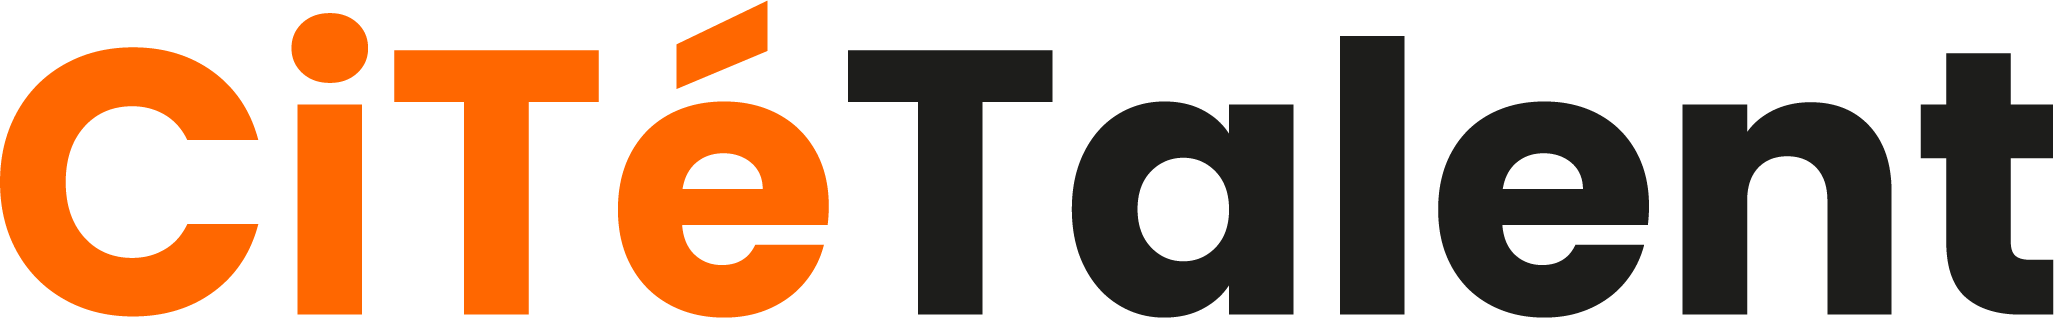 CitéTalent – Accélérateur de performances Logo